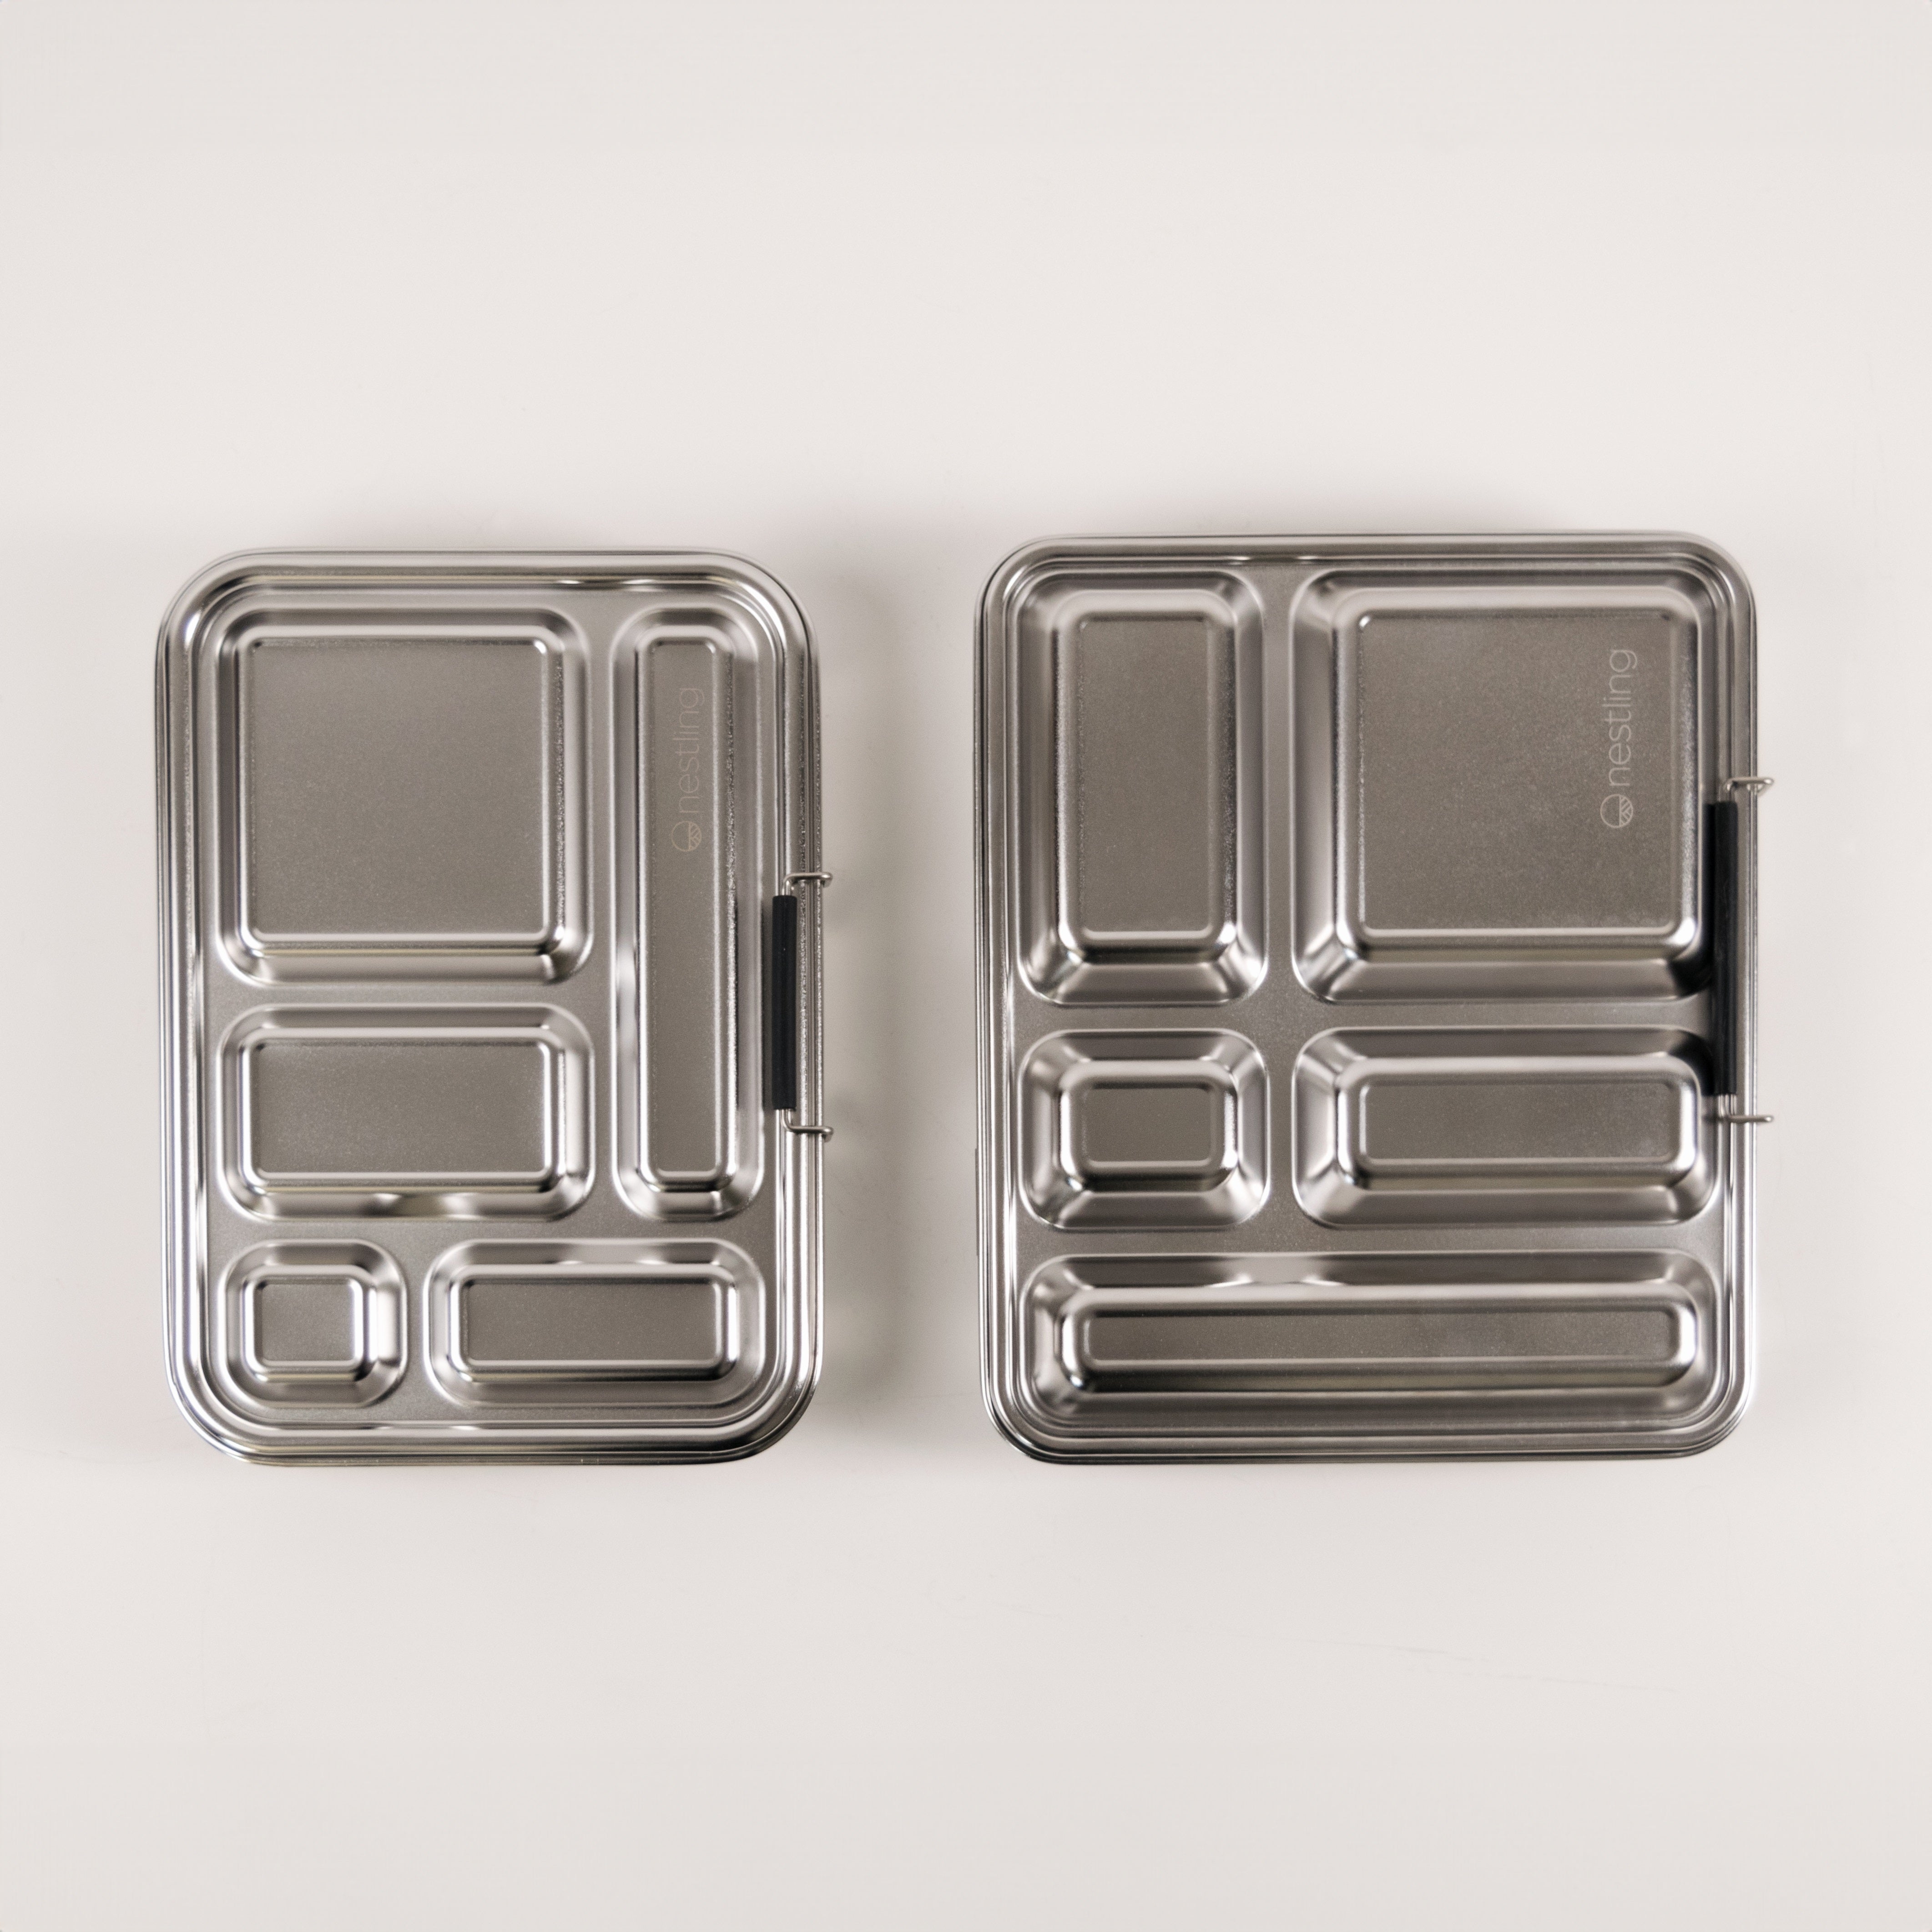 Nestling Stainless Steel Jumbo Lunchbox